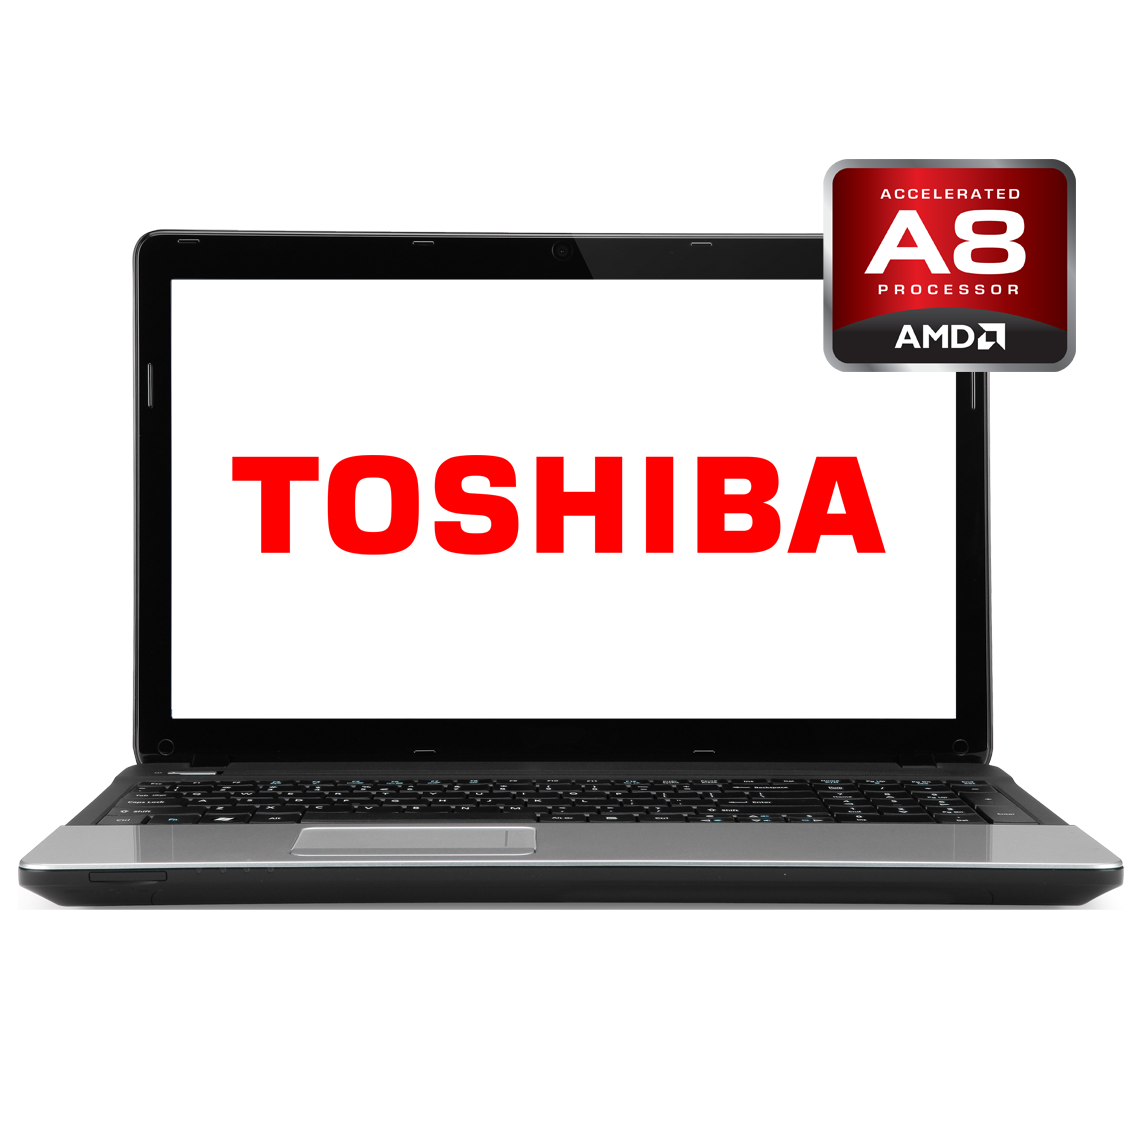 Toshiba - 13.3 inch AMD A8